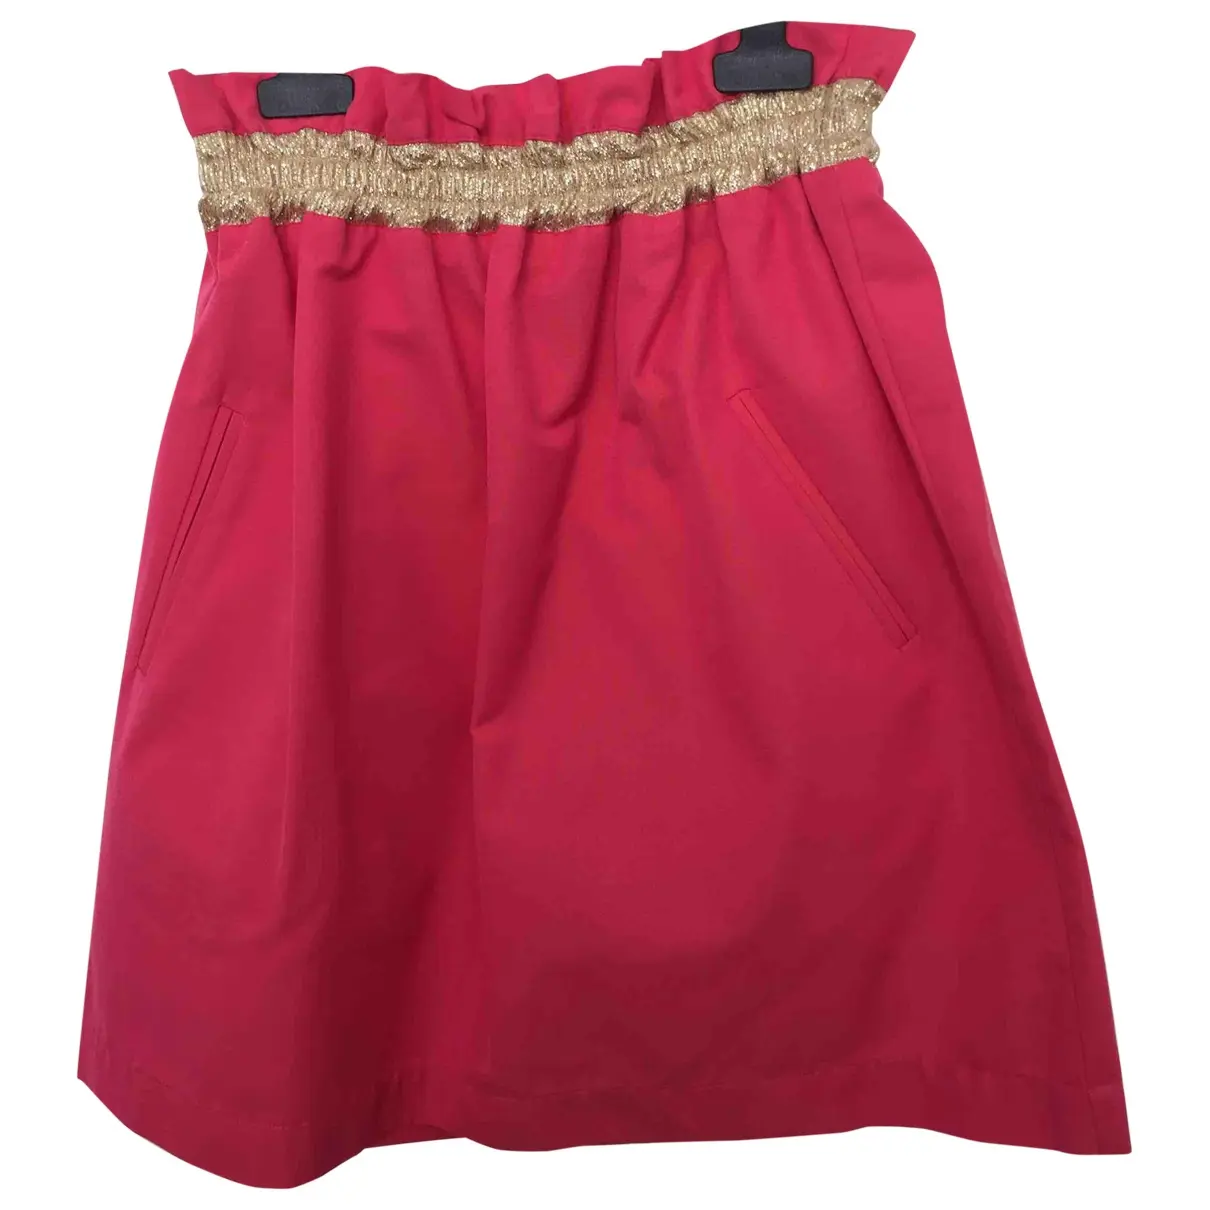 Mini skirt Koshka Mashka